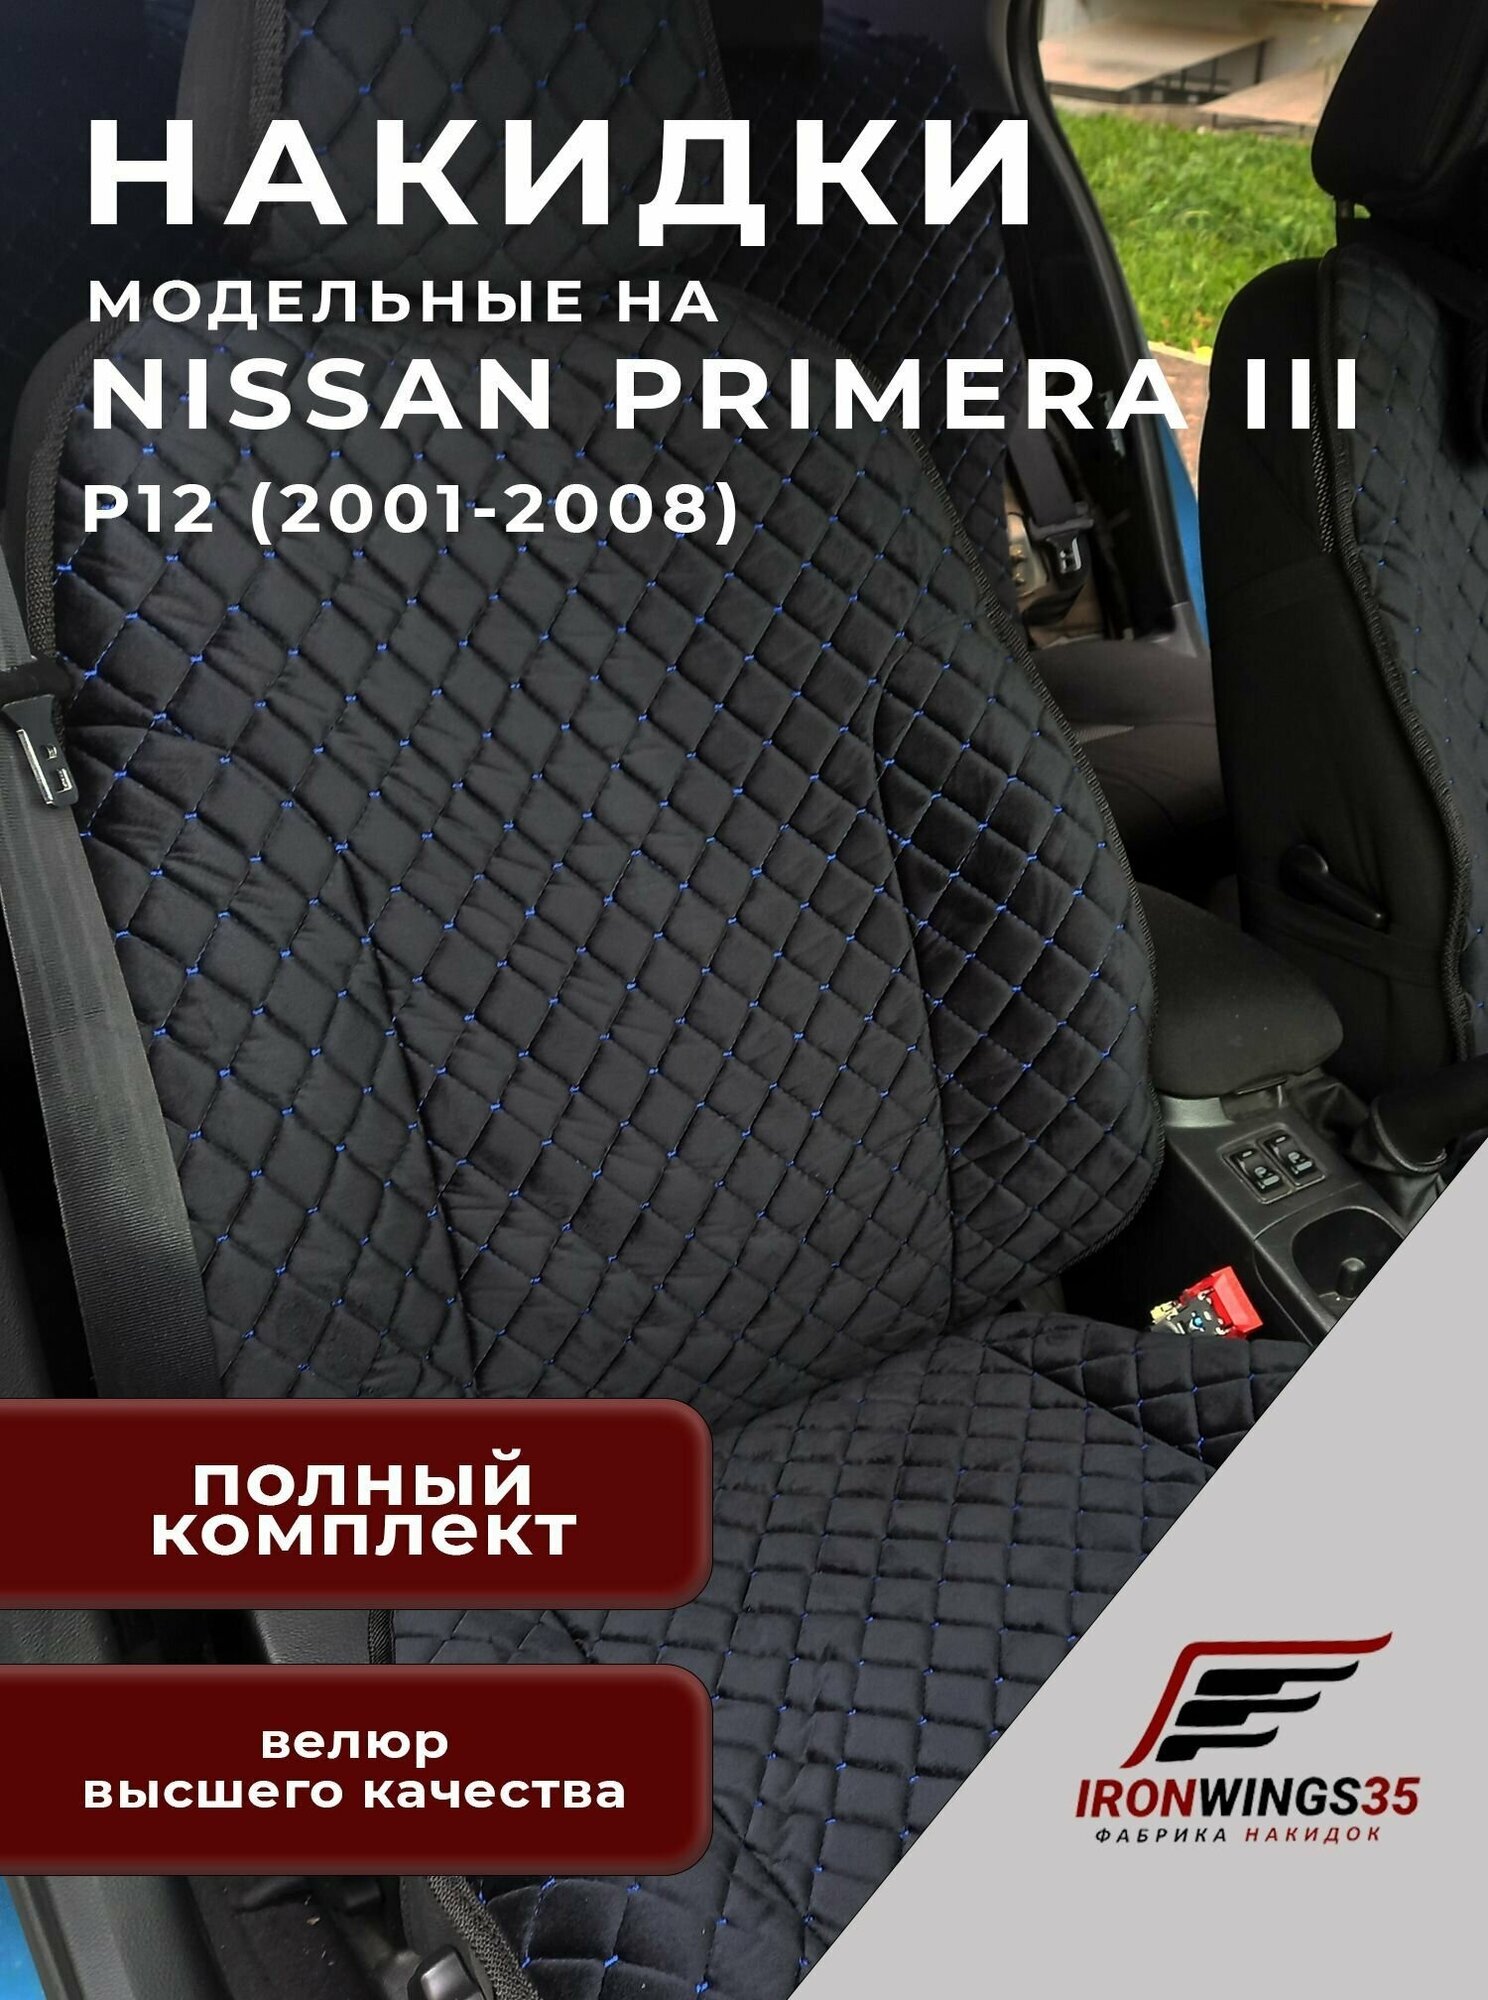 Комплект чехлов накидок на передние и задние сиденья автомобиля NISSAN PRIMERA III из велюра в ромбик